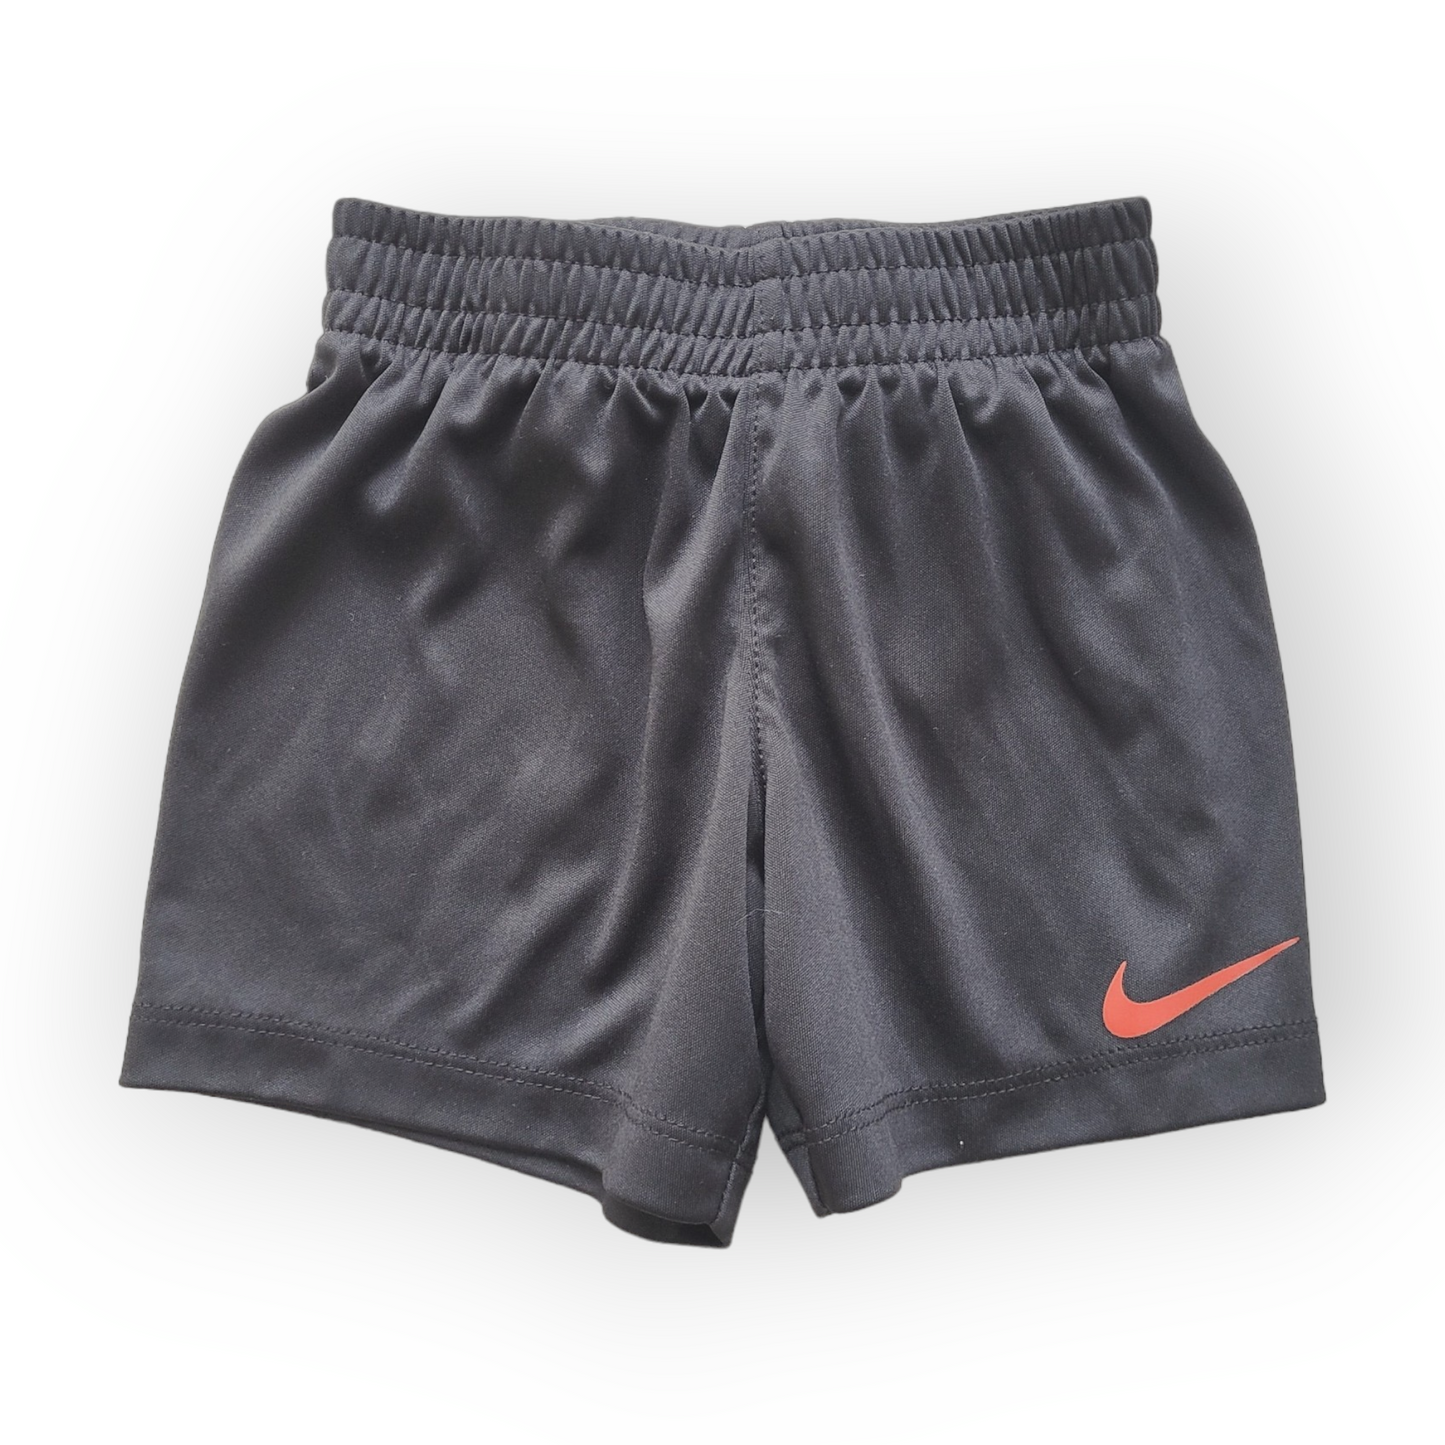 Short | Nike | 18 mois